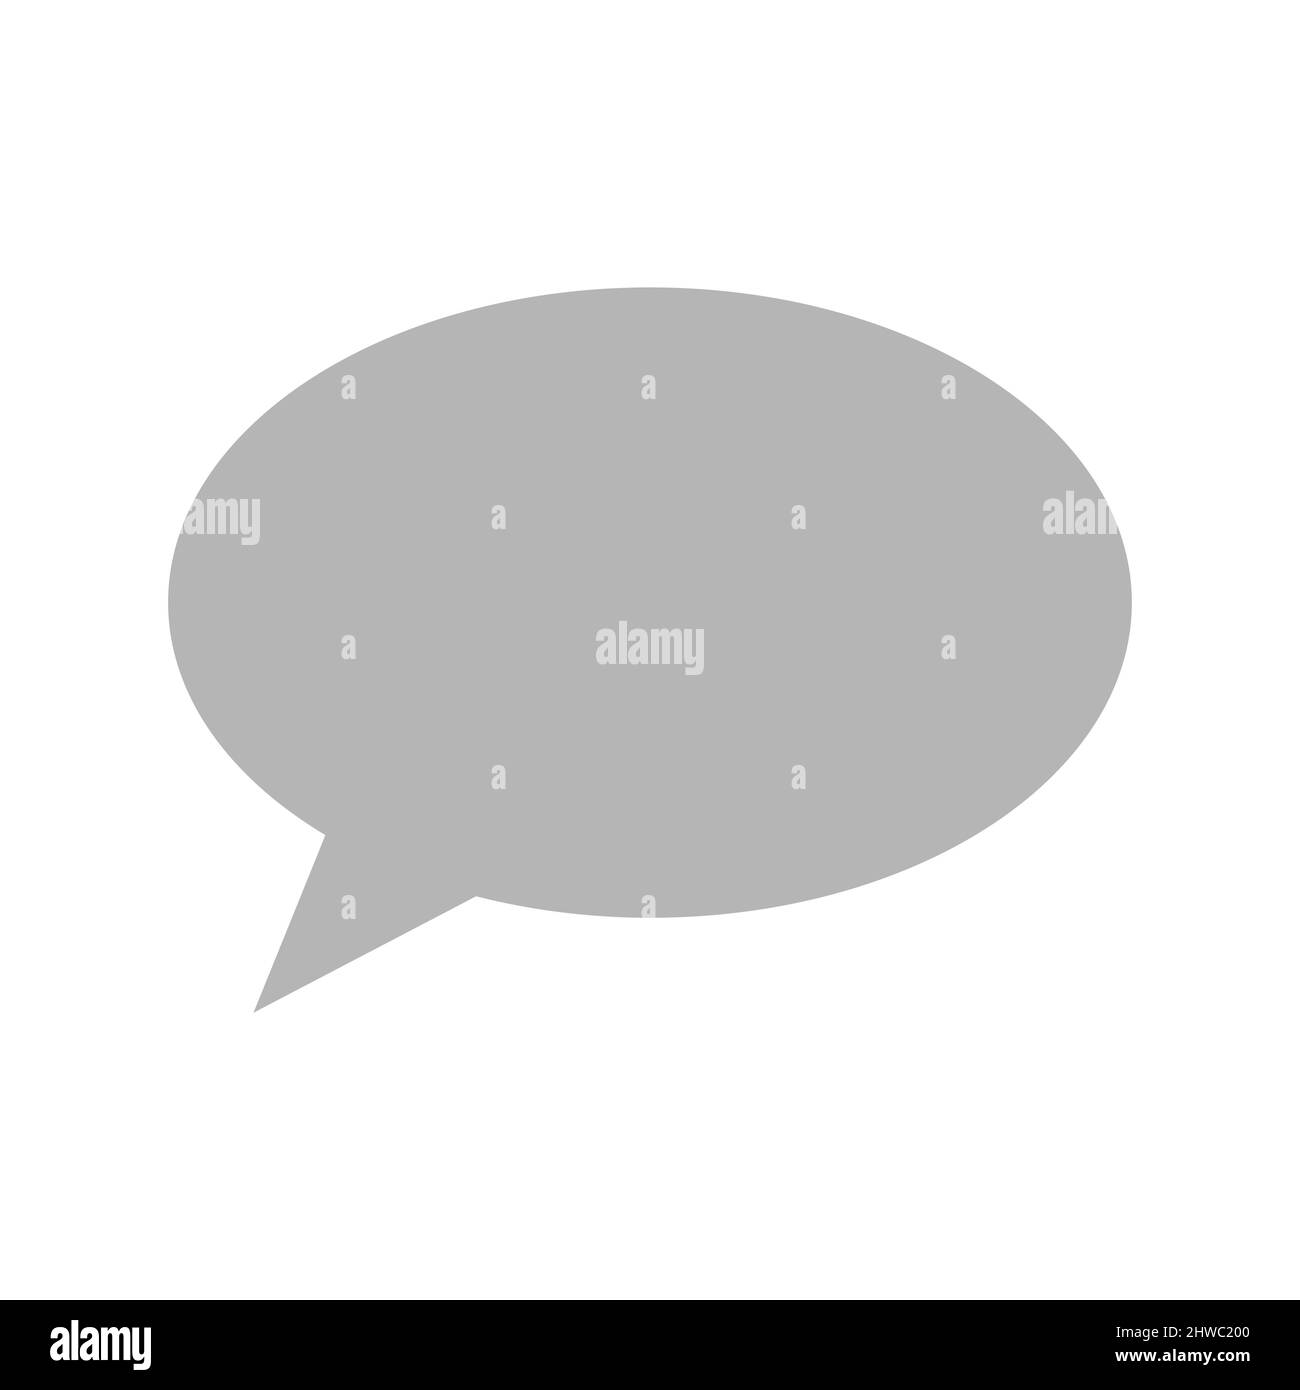 Icona vettoriale con fumetto vocale o chat. Simbolo di fumetto parlante o pensante. Illustrazione Vettoriale